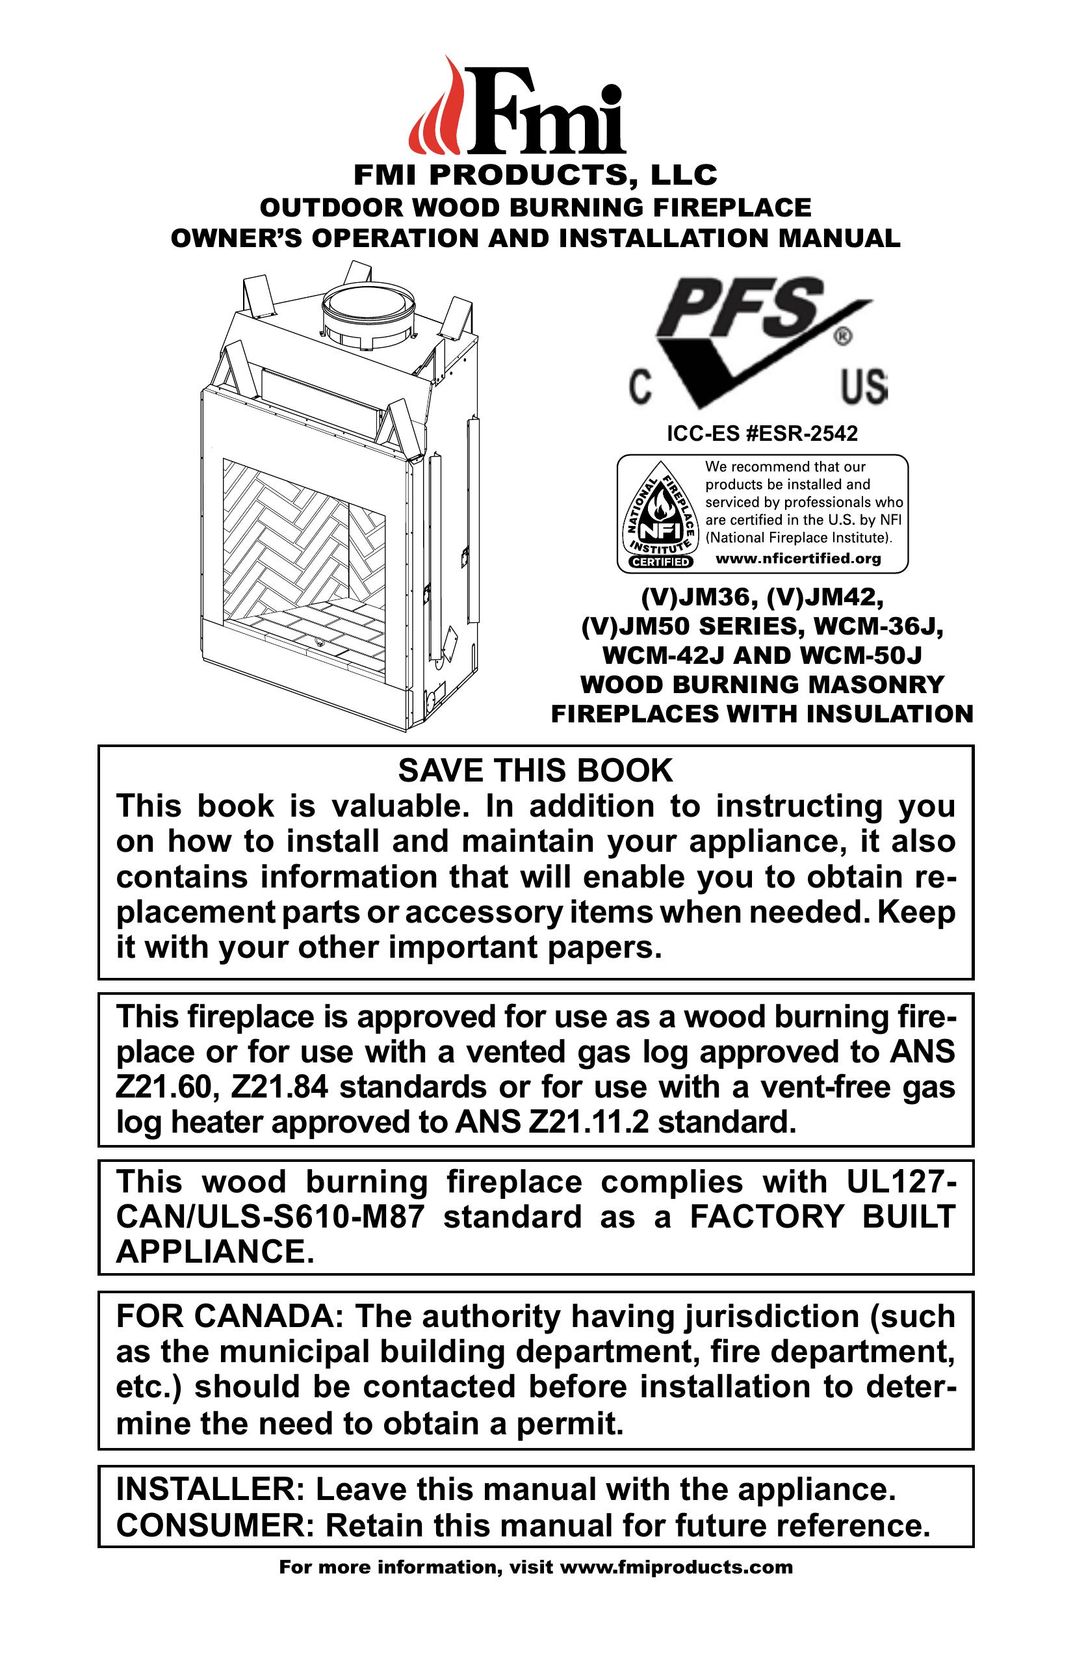 FMI (V)JM36 Indoor Fireplace User Manual